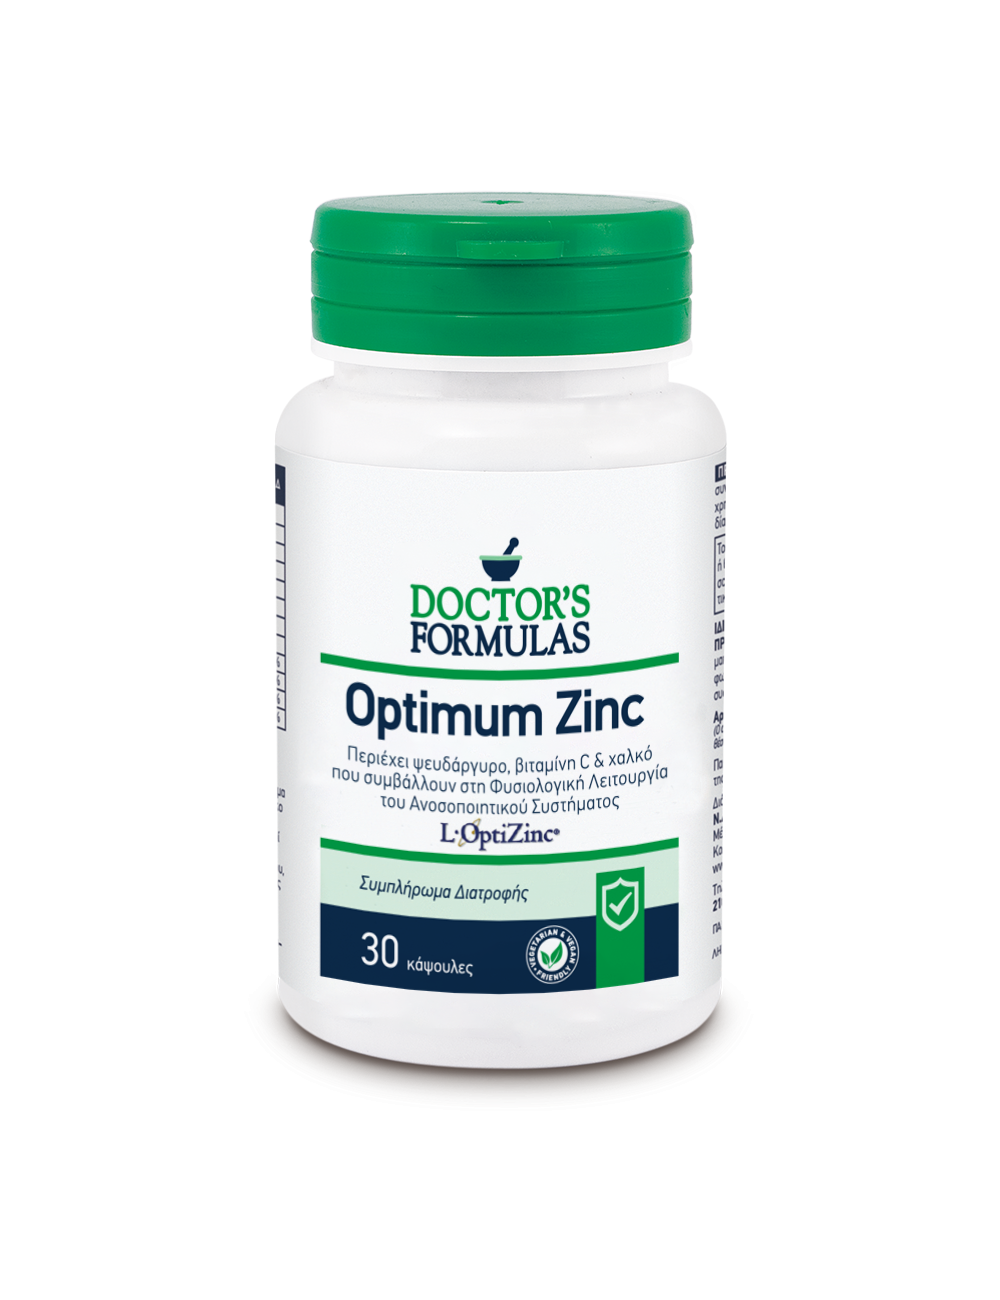 OPTIMUM ZINC | Immune System Function